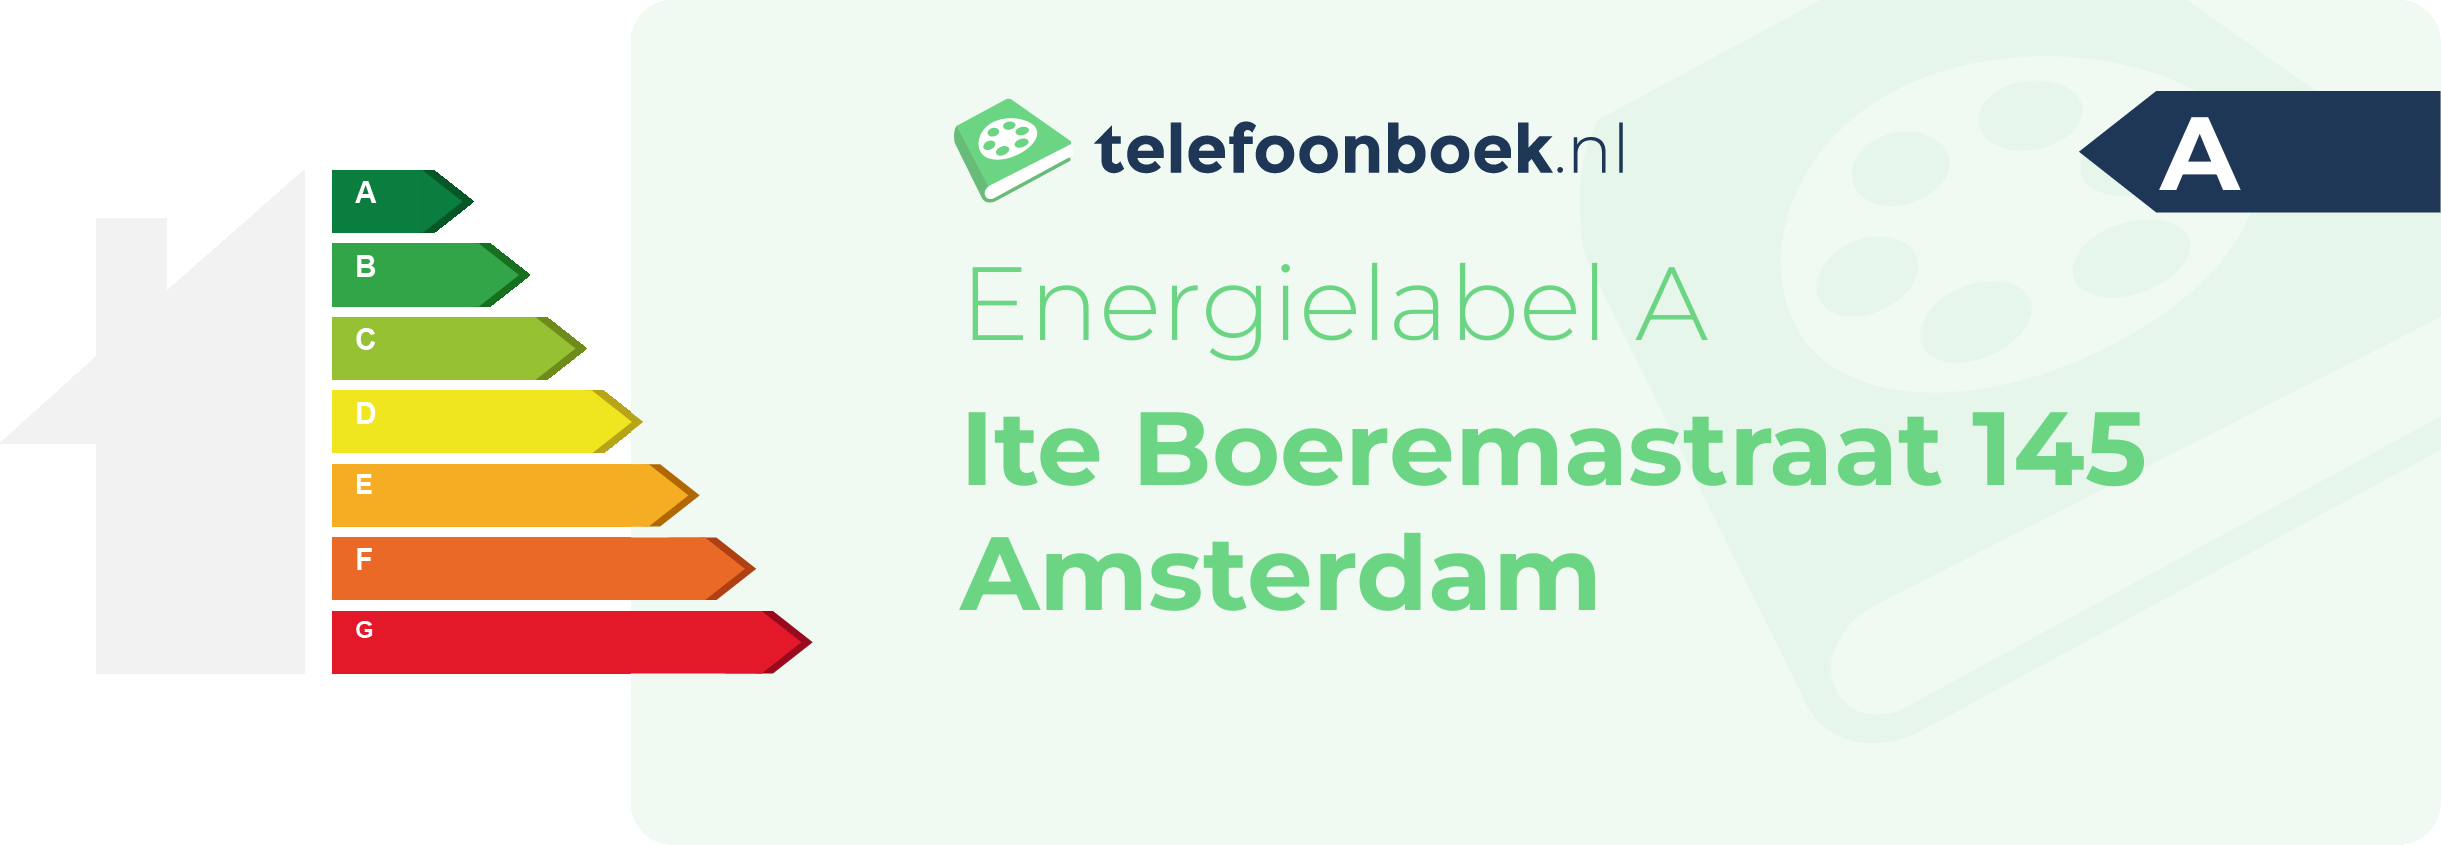 Energielabel Ite Boeremastraat 145 Amsterdam